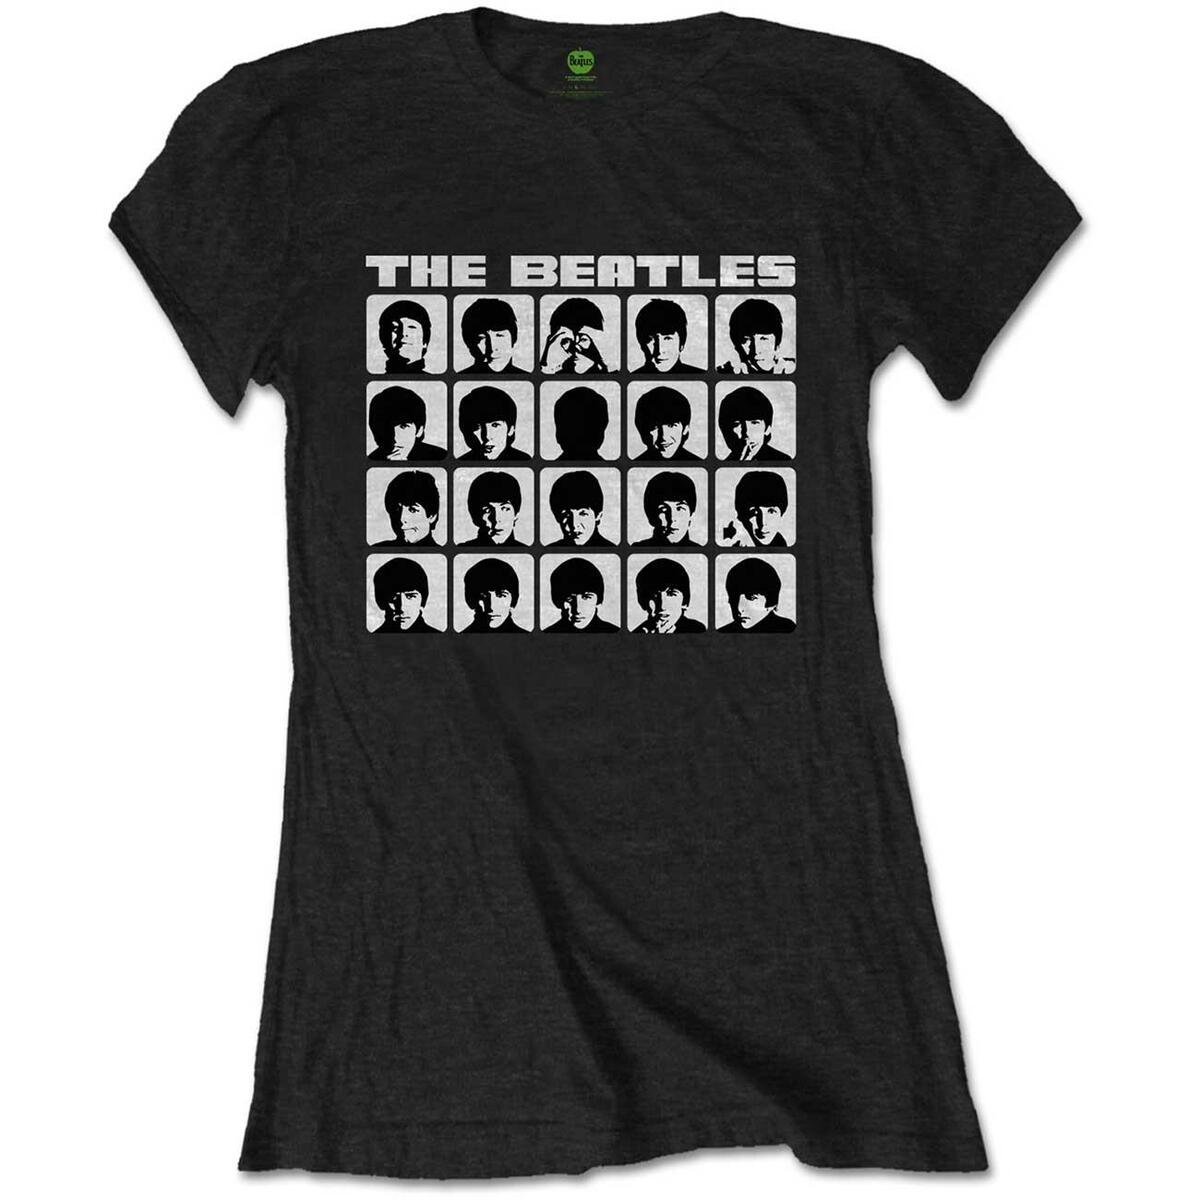 (ビートルズ) The Beatles オフィシャル商品 レディース Hard Days Night Faces Tシャツ 半袖 トップス 【海外通販】